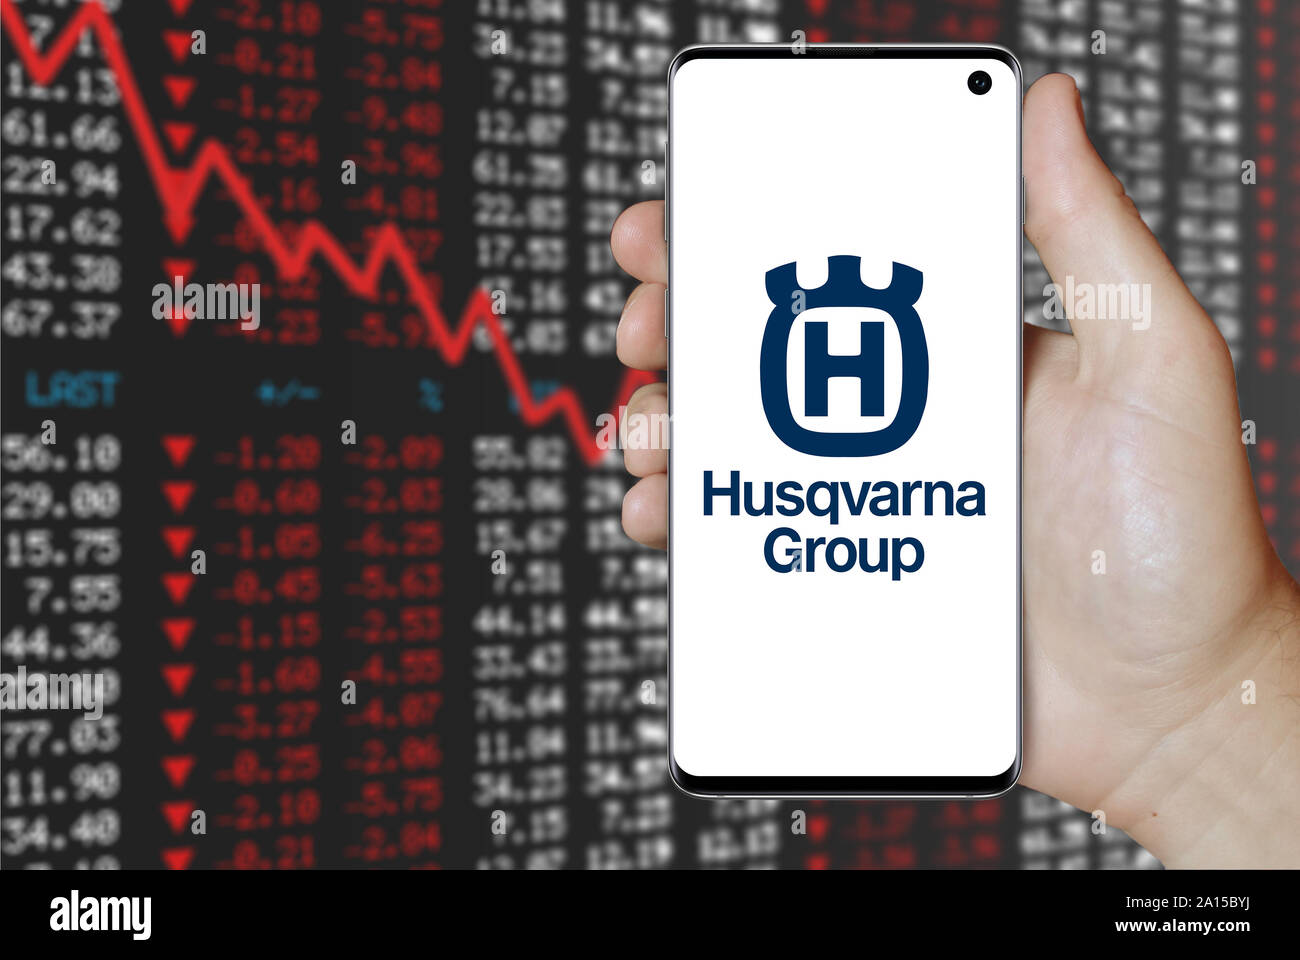 Un homme est titulaire d'un smartphone affichant le logo de société Husqvarna énumérés sur OMX Stockholm. Contexte du marché boursier négatif. Credit : PIXDUCE Banque D'Images